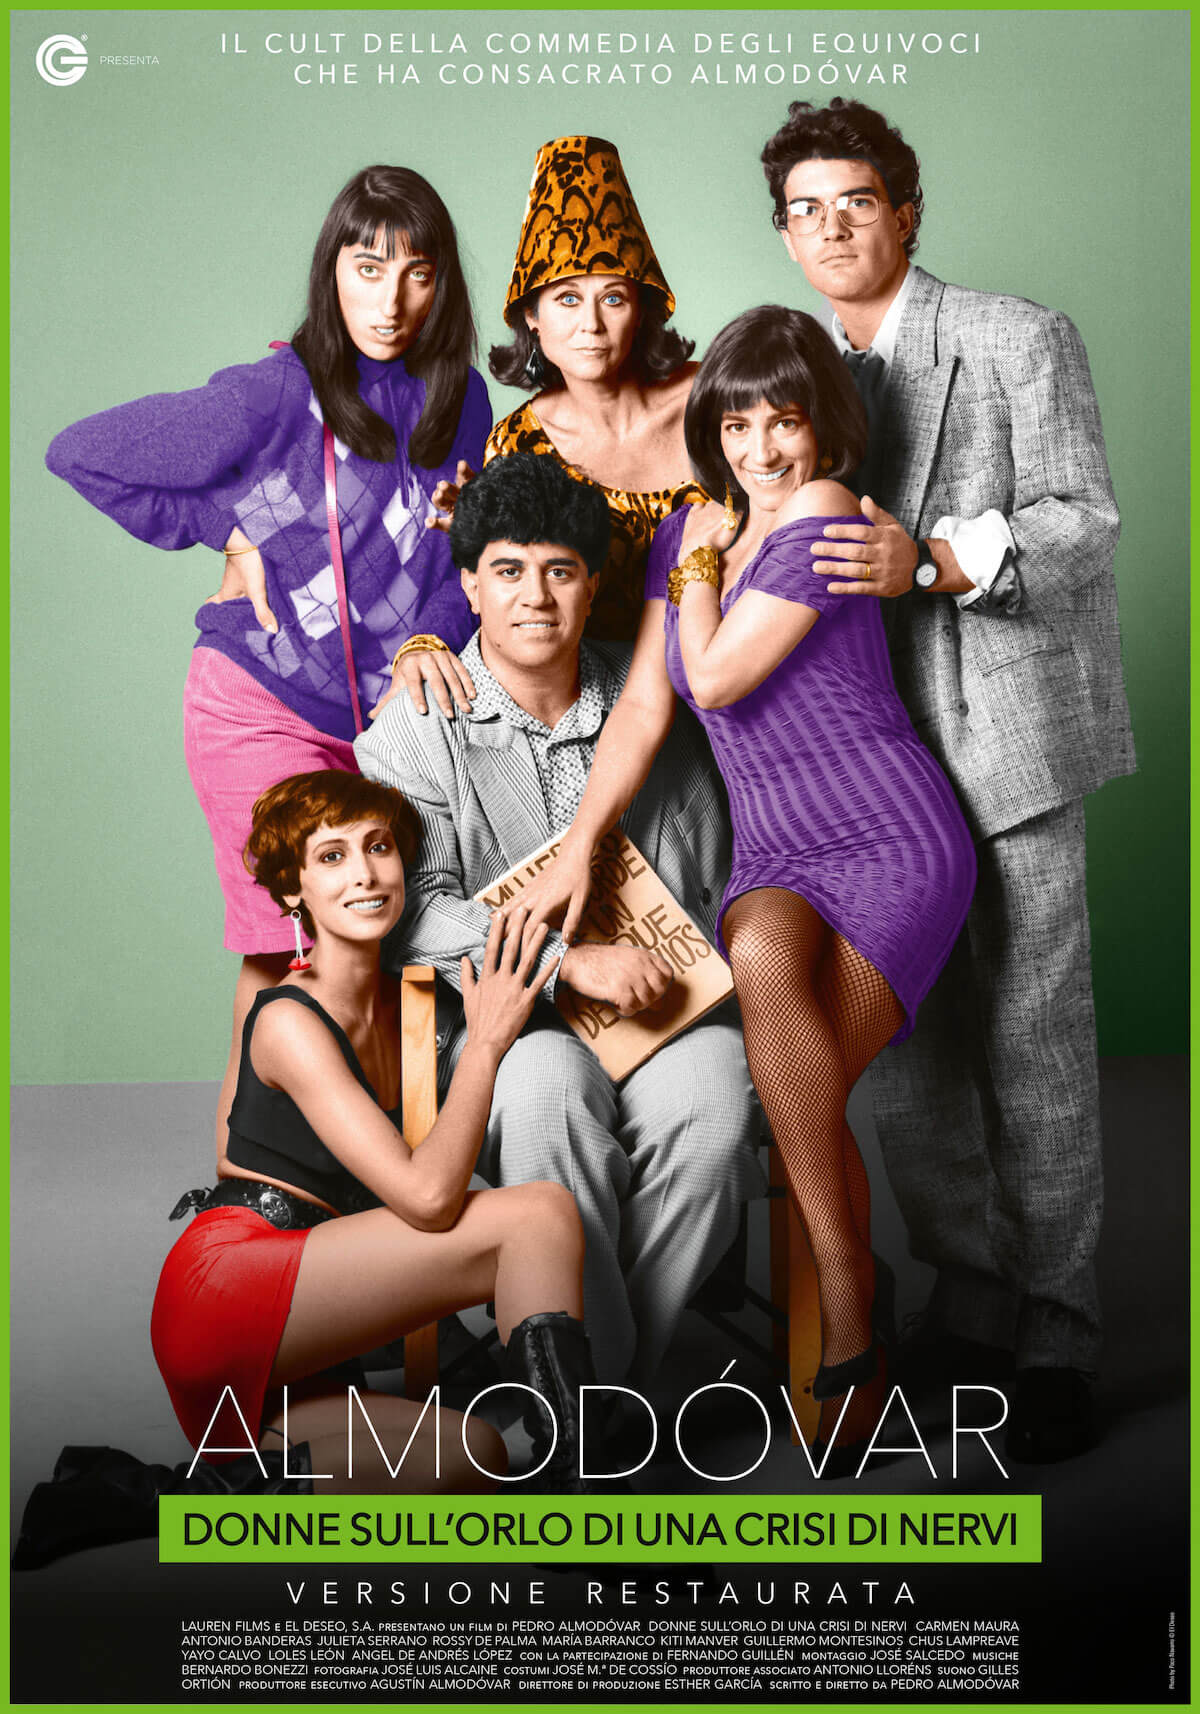 Pedro Almodovar, 5 suoi film di culto tornano nei cinema d'Italia. Poster e trailer - donne sullorlo di una crisi di nervi - Gay.it